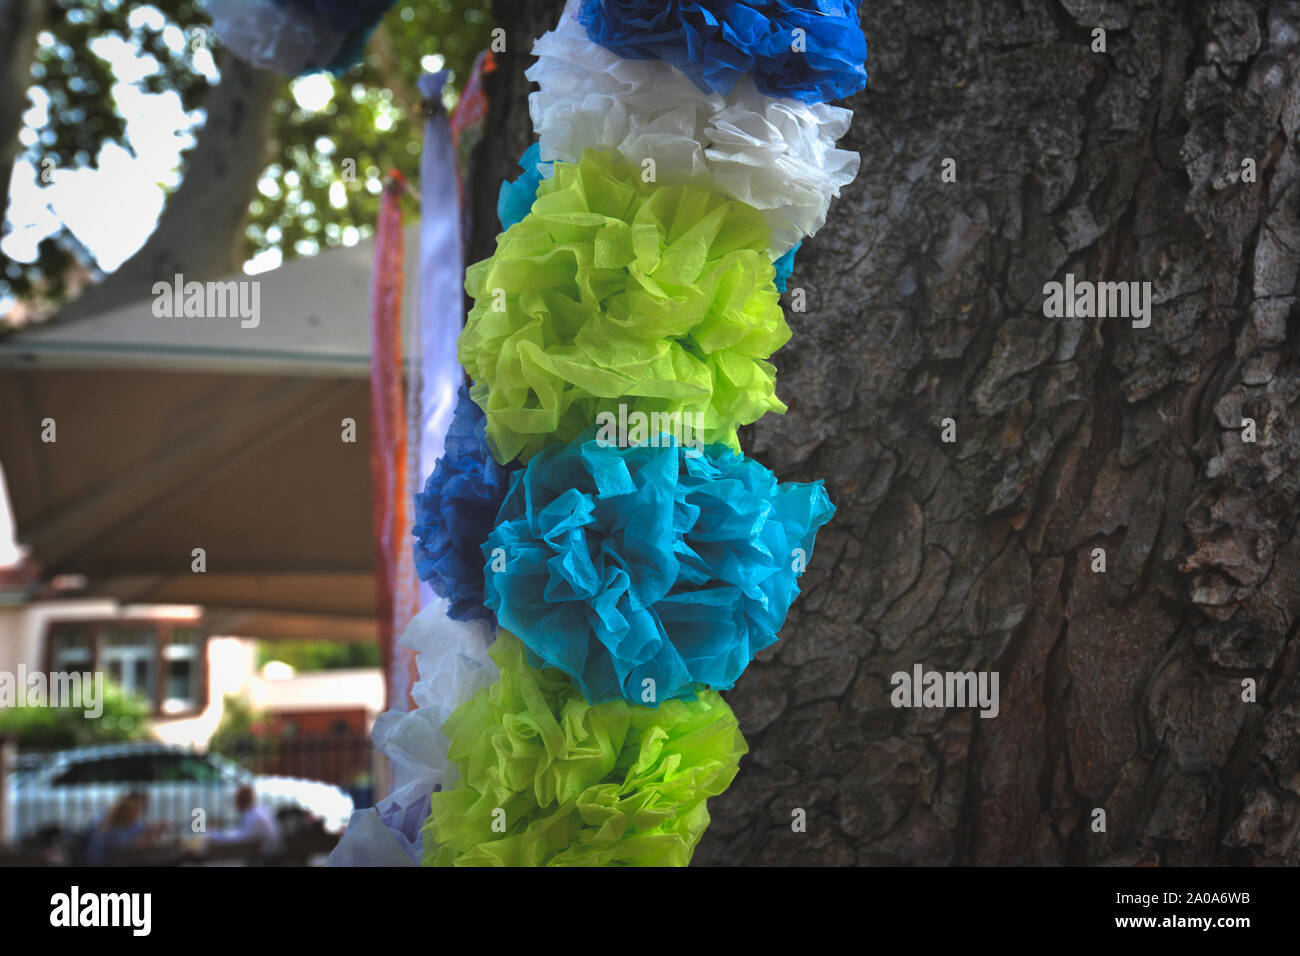 Verde, Blu e bianco grande carta soffice ghirlanda di fiori appesi a tree come parte di decorazioni per matrimoni Foto Stock